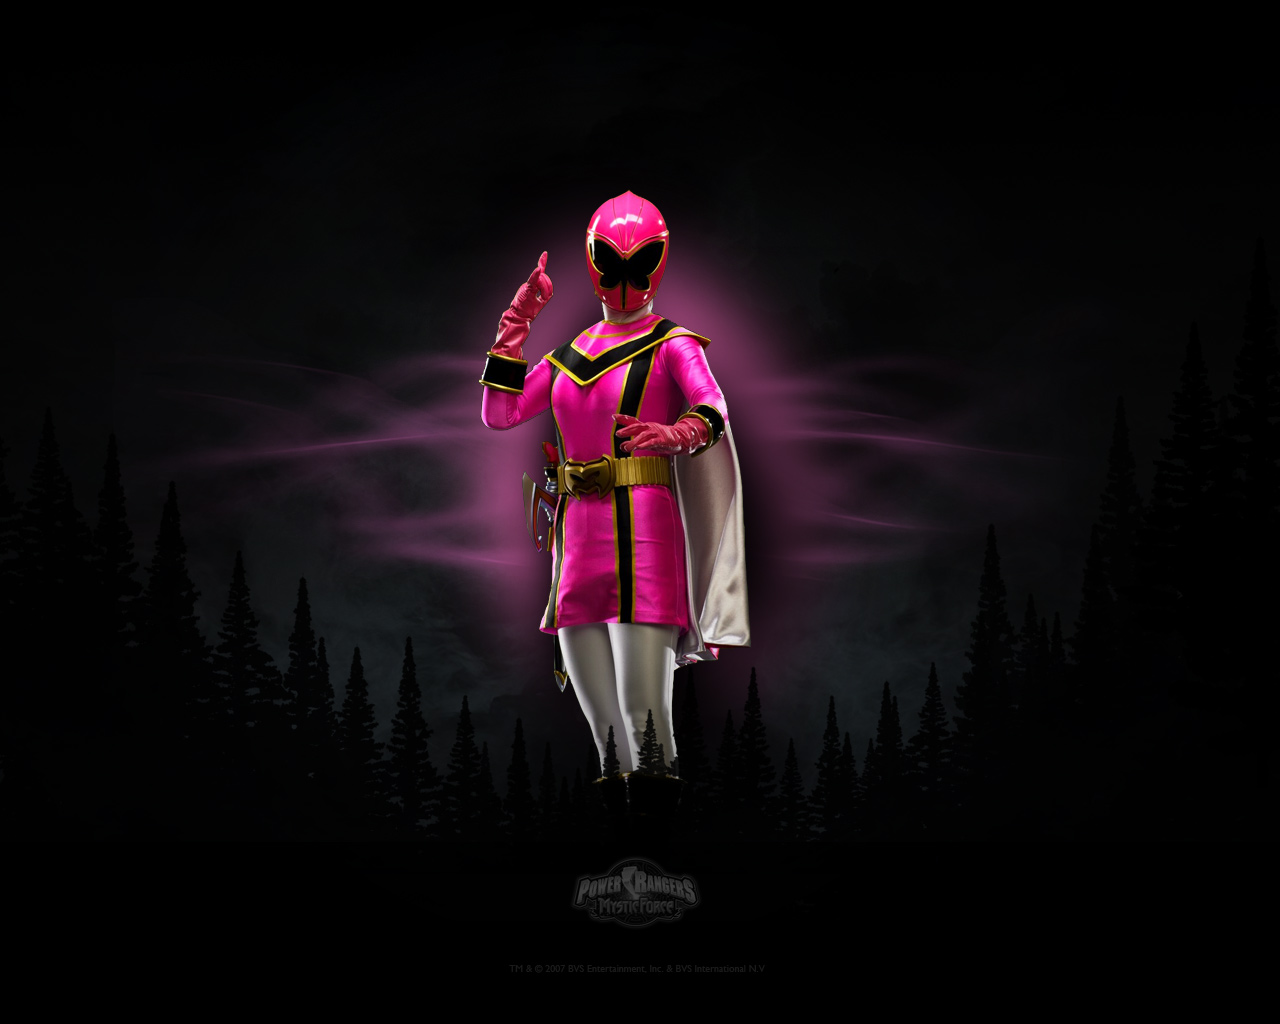 fondo de pantalla de power rangers,rosado,oscuridad,ilustración,diseño gráfico,personaje de ficción